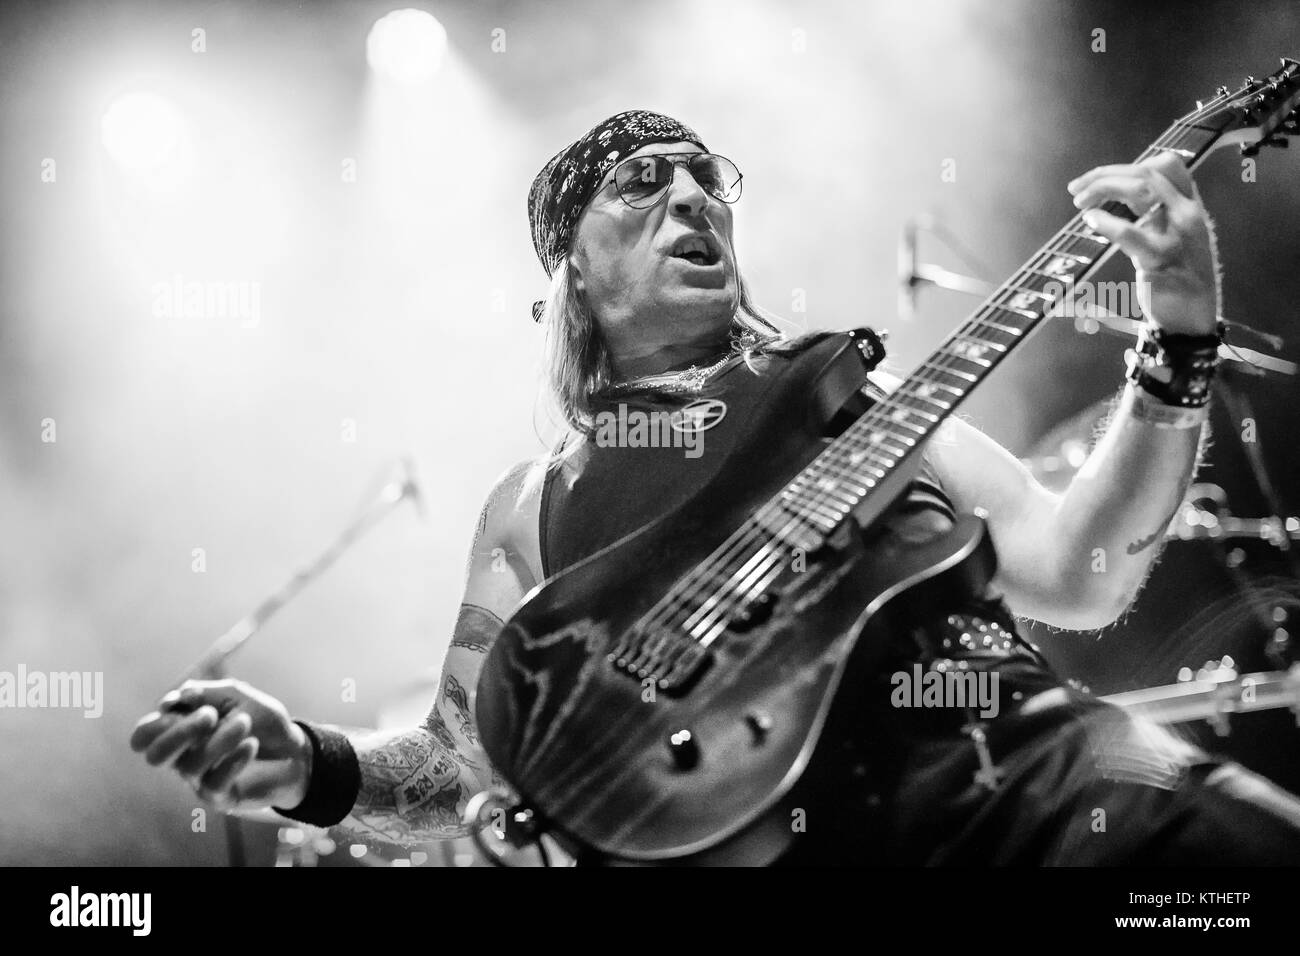 La banda de heavy metal británico Venom Inc realiza un concierto en vivo en el Rockefeller durante el festival de heavy metal noruego Inferno Metal Festival 2017 en Oslo. Aquí el guitarrista Jeffrey 'Mantas' Dunn es visto en vivo en el escenario. Noruega, 13/04 2017. Foto de stock